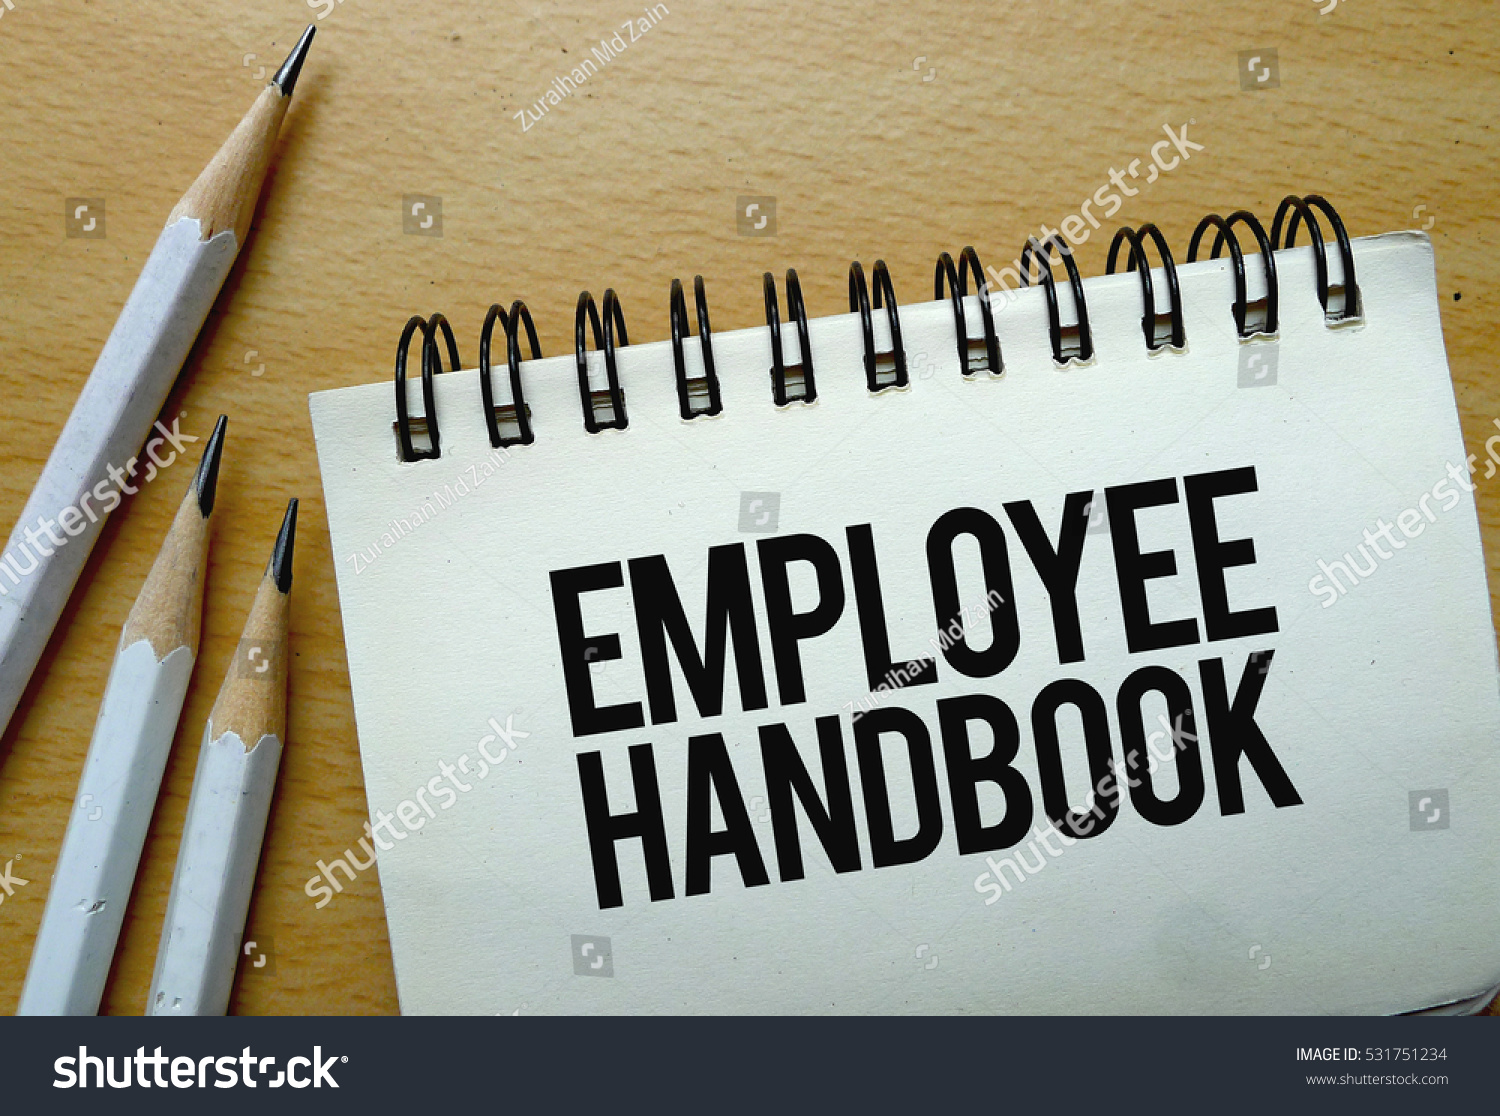 Employee Handbook text written on a notebook with pencils #531751234